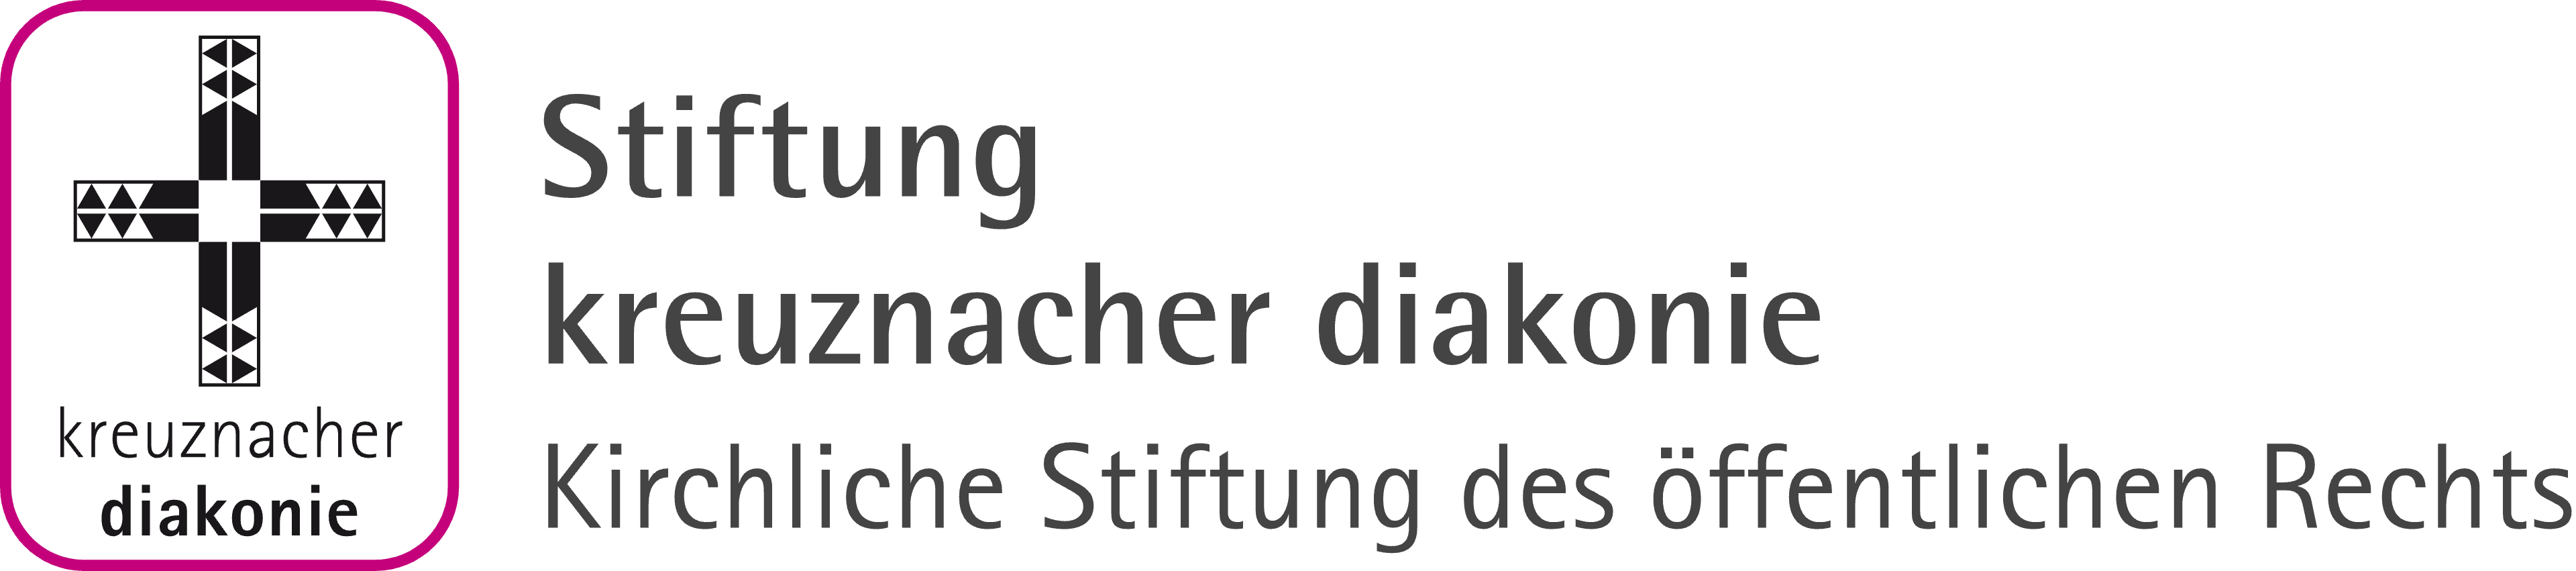 Stiftung kreuznacher diakonie logo